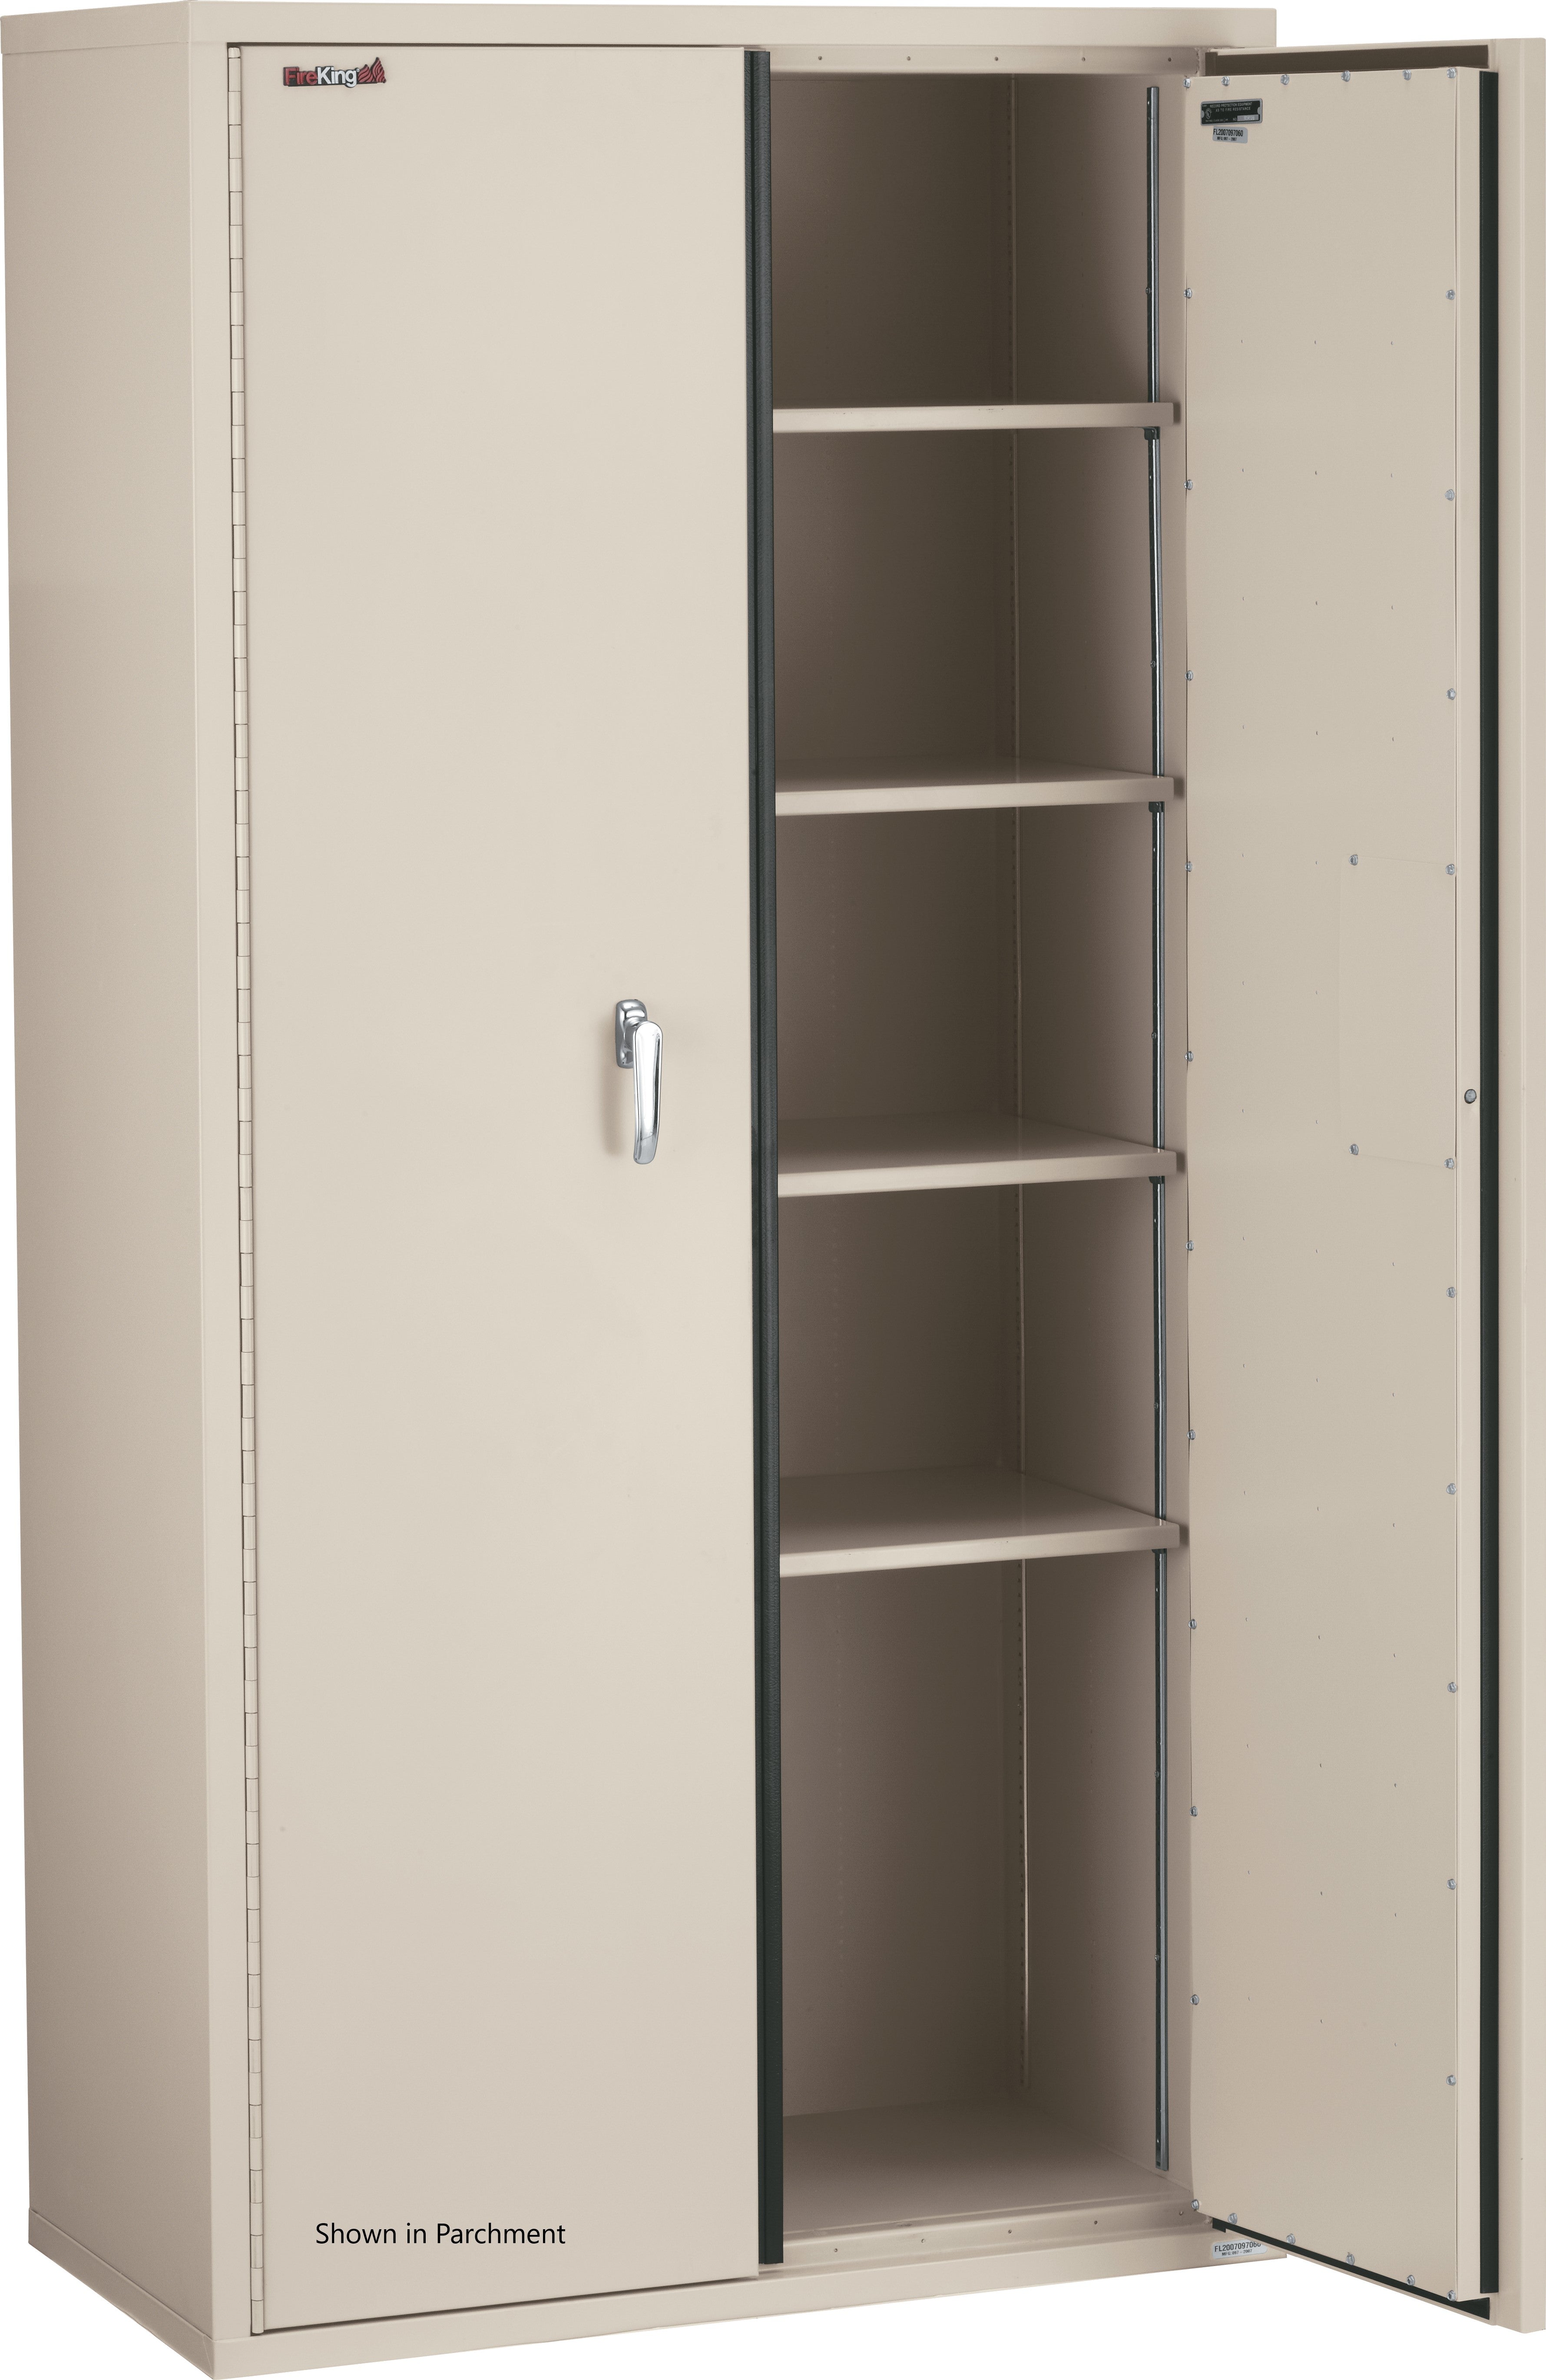 Fire Resistant - Double door storage cabinet - 72"H